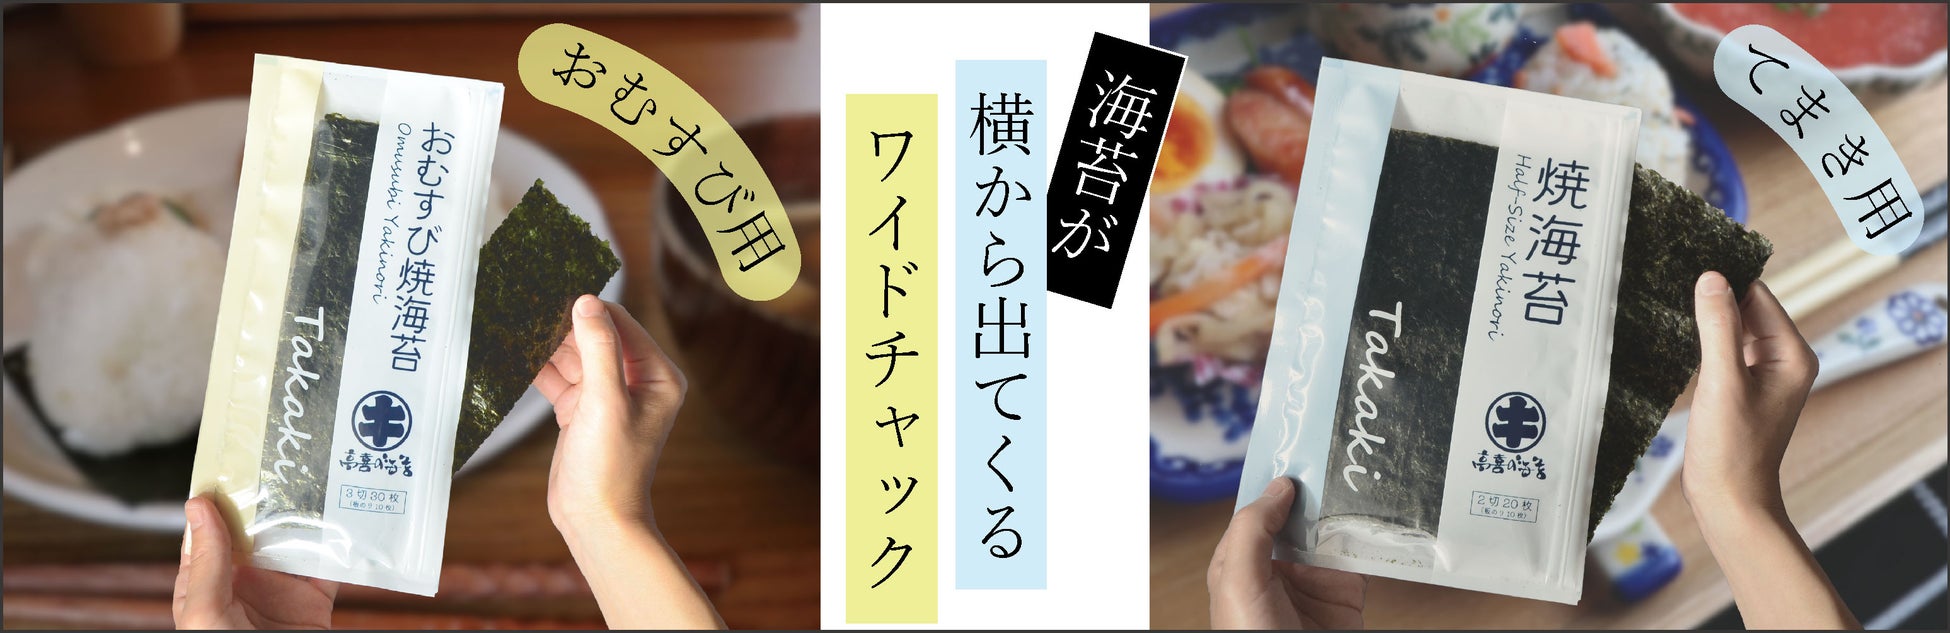 白鶴は、大豆ミート特有のにおいを抑え風味を向上させる業務用の代替肉用料理酒を新発売